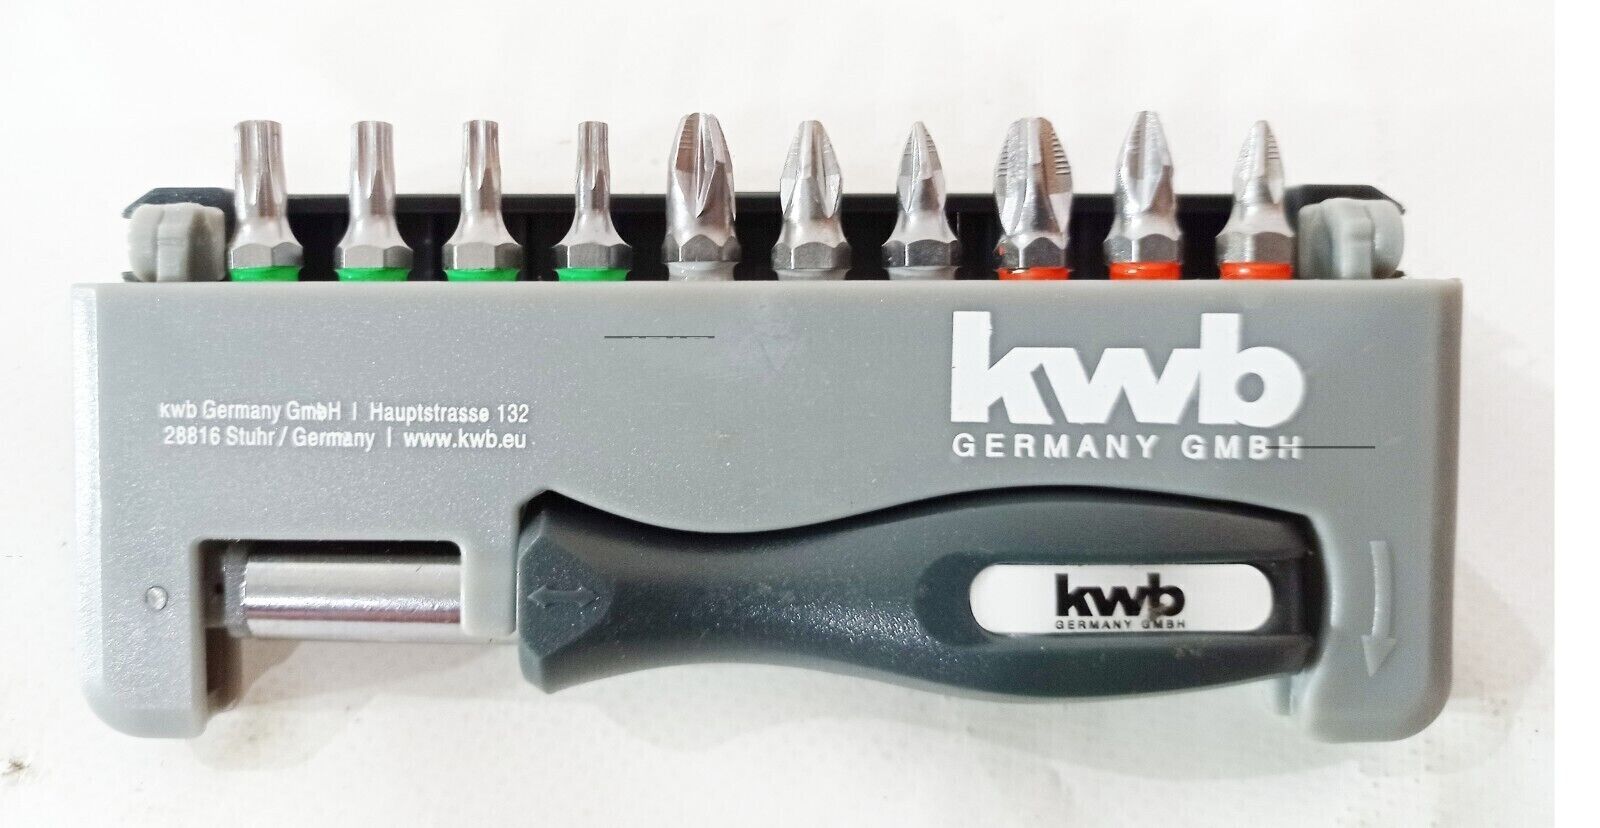 kwb Bit-Box Industrial Steel Standard